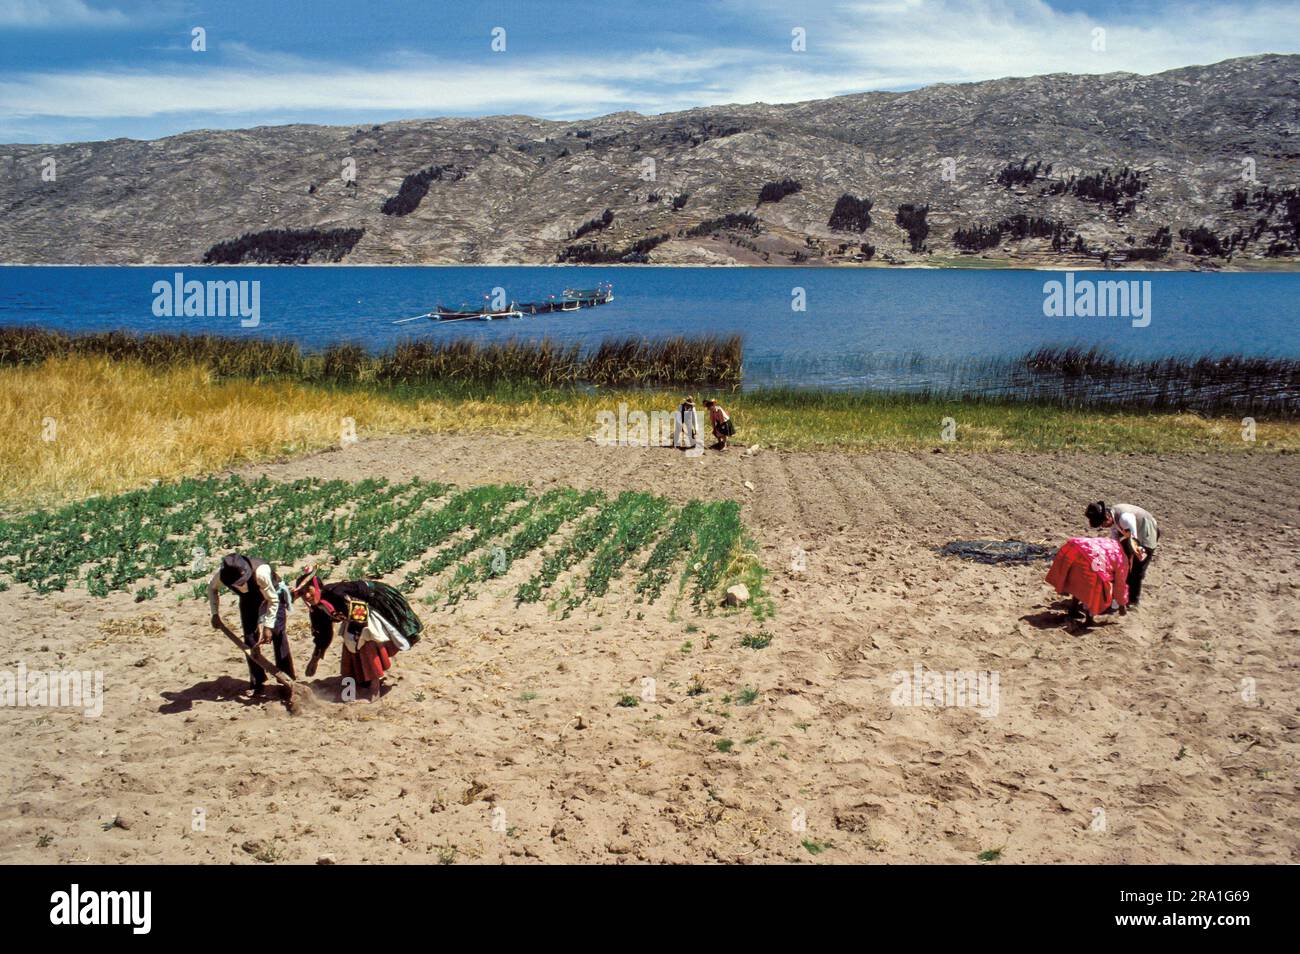 Perù, lago Titicaca; coppie che lavorano in un orto e un vivaio di pesci nel lago dietro di loro. Foto Stock